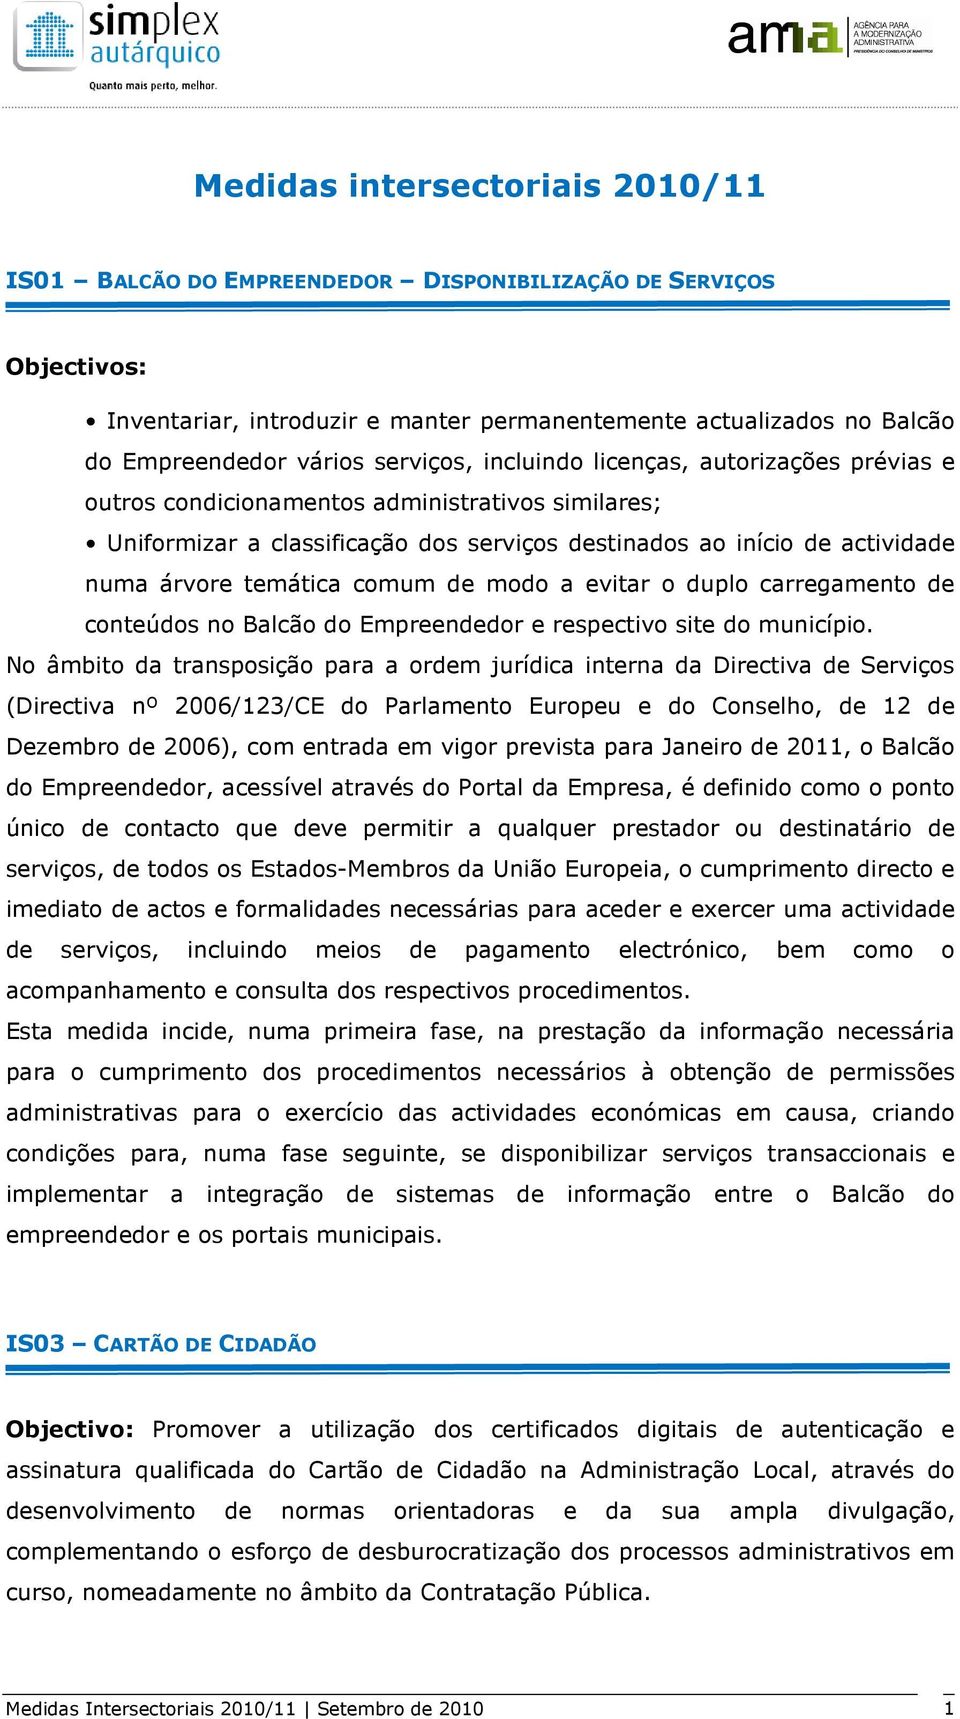 temática comum de modo a evitar o duplo carregamento de conteúdos no Balcão do Empreendedor e respectivo site do município.